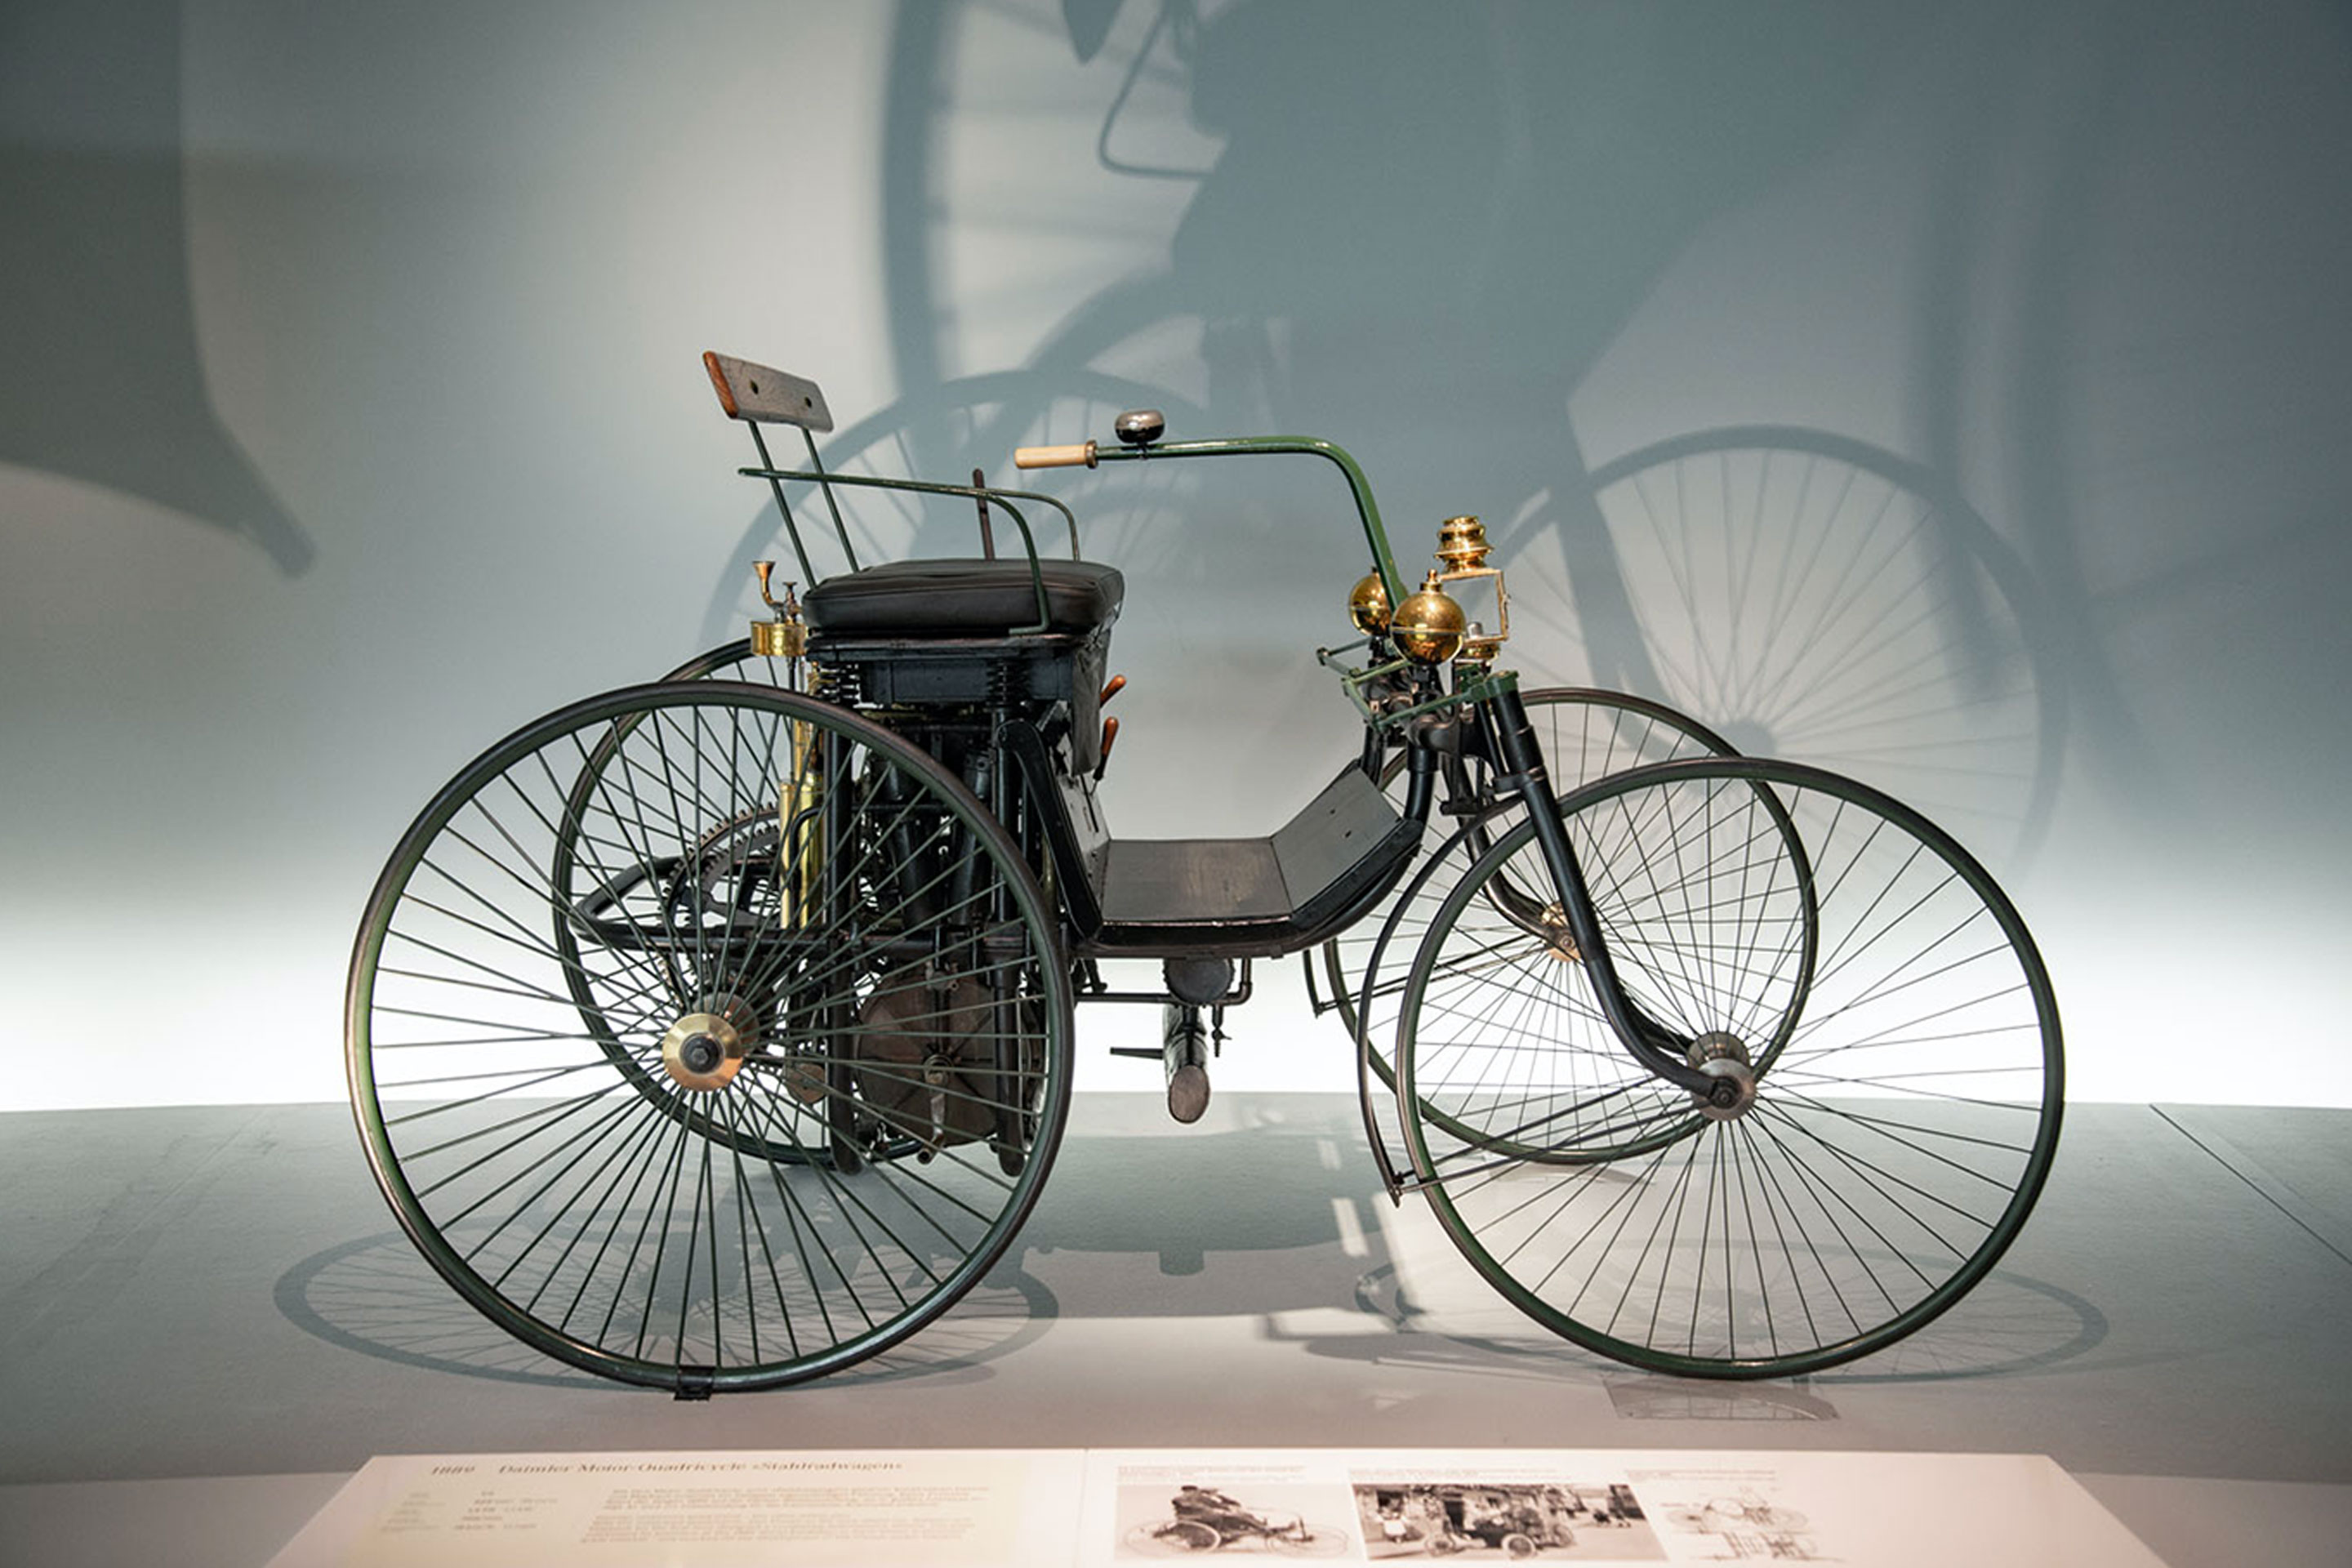 The Daimler motorized quadricycle